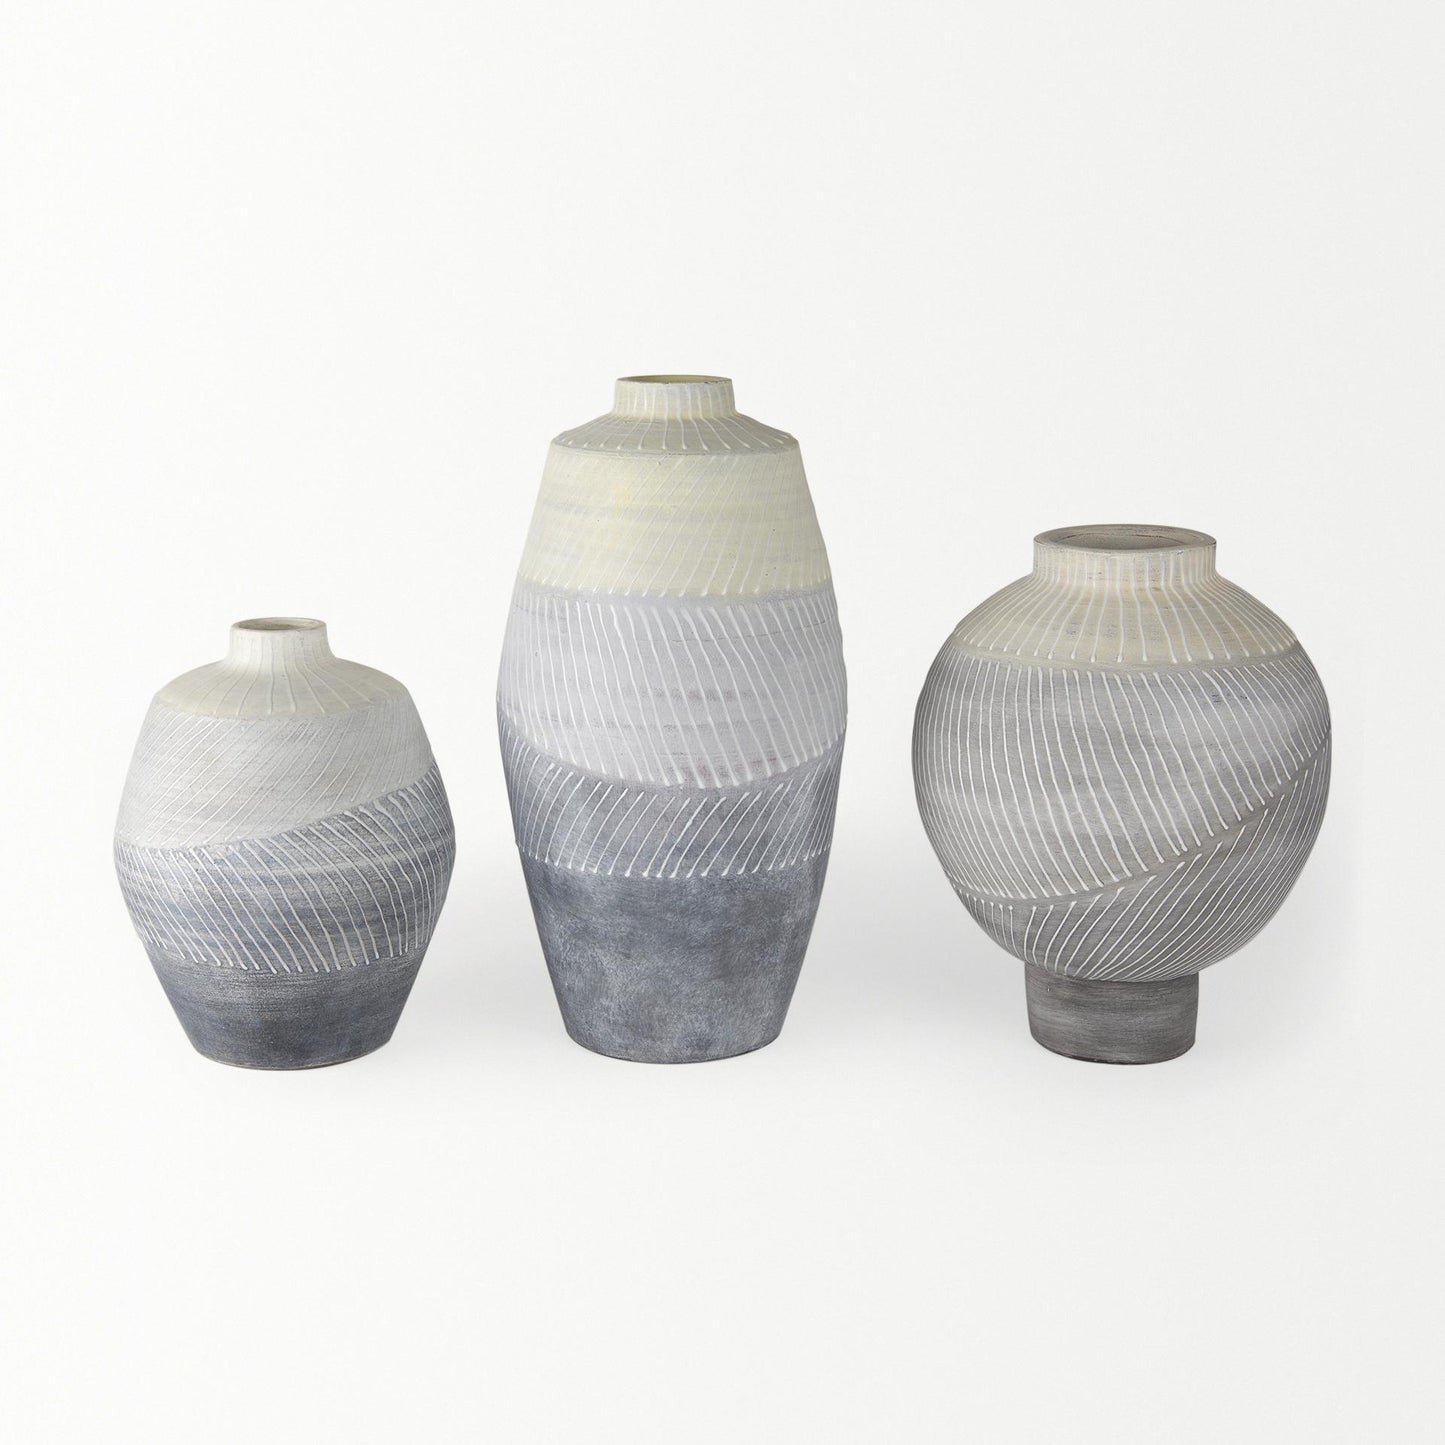 Blume 16.5H Off-White w/ Gray Textured Vase